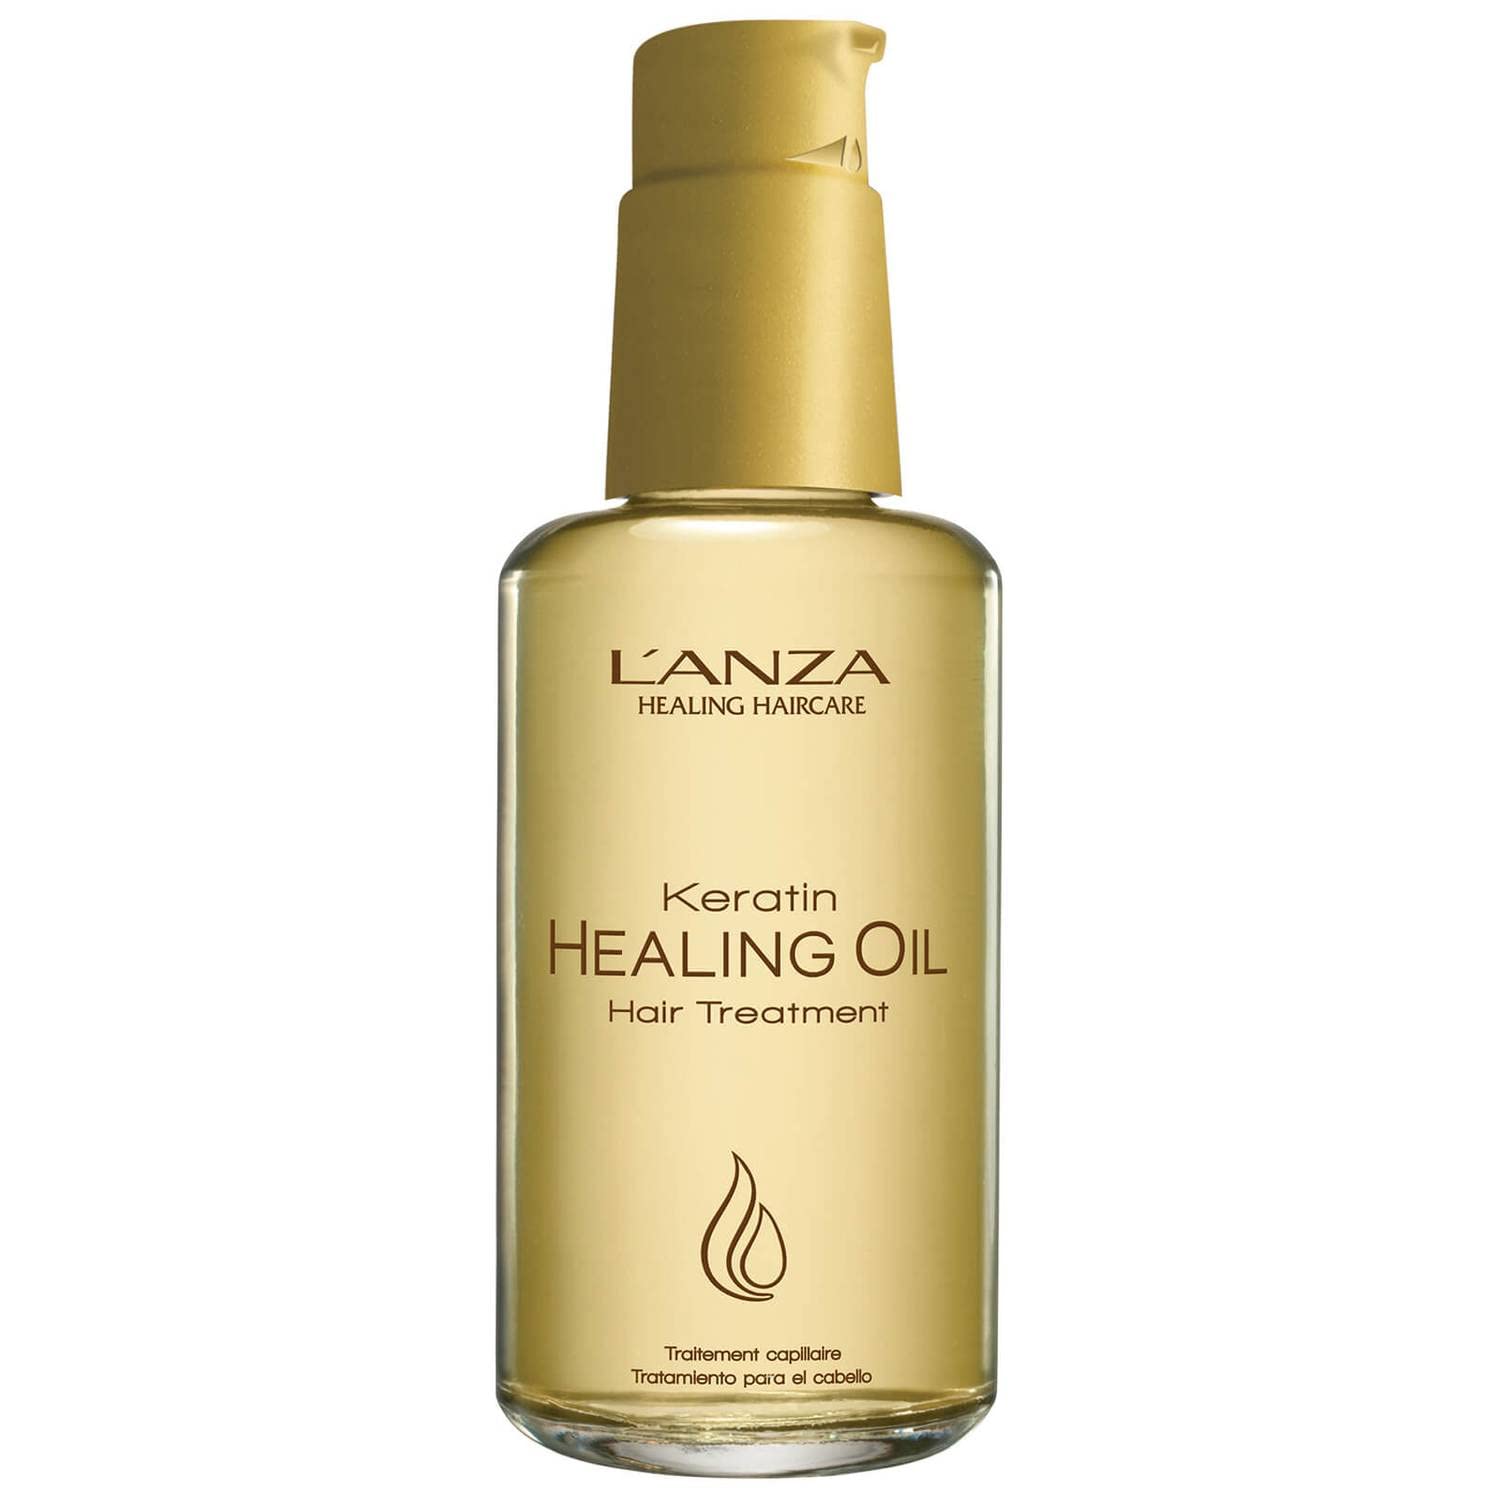 L'ANZA Keratin Healing Oil Treatment 100ml